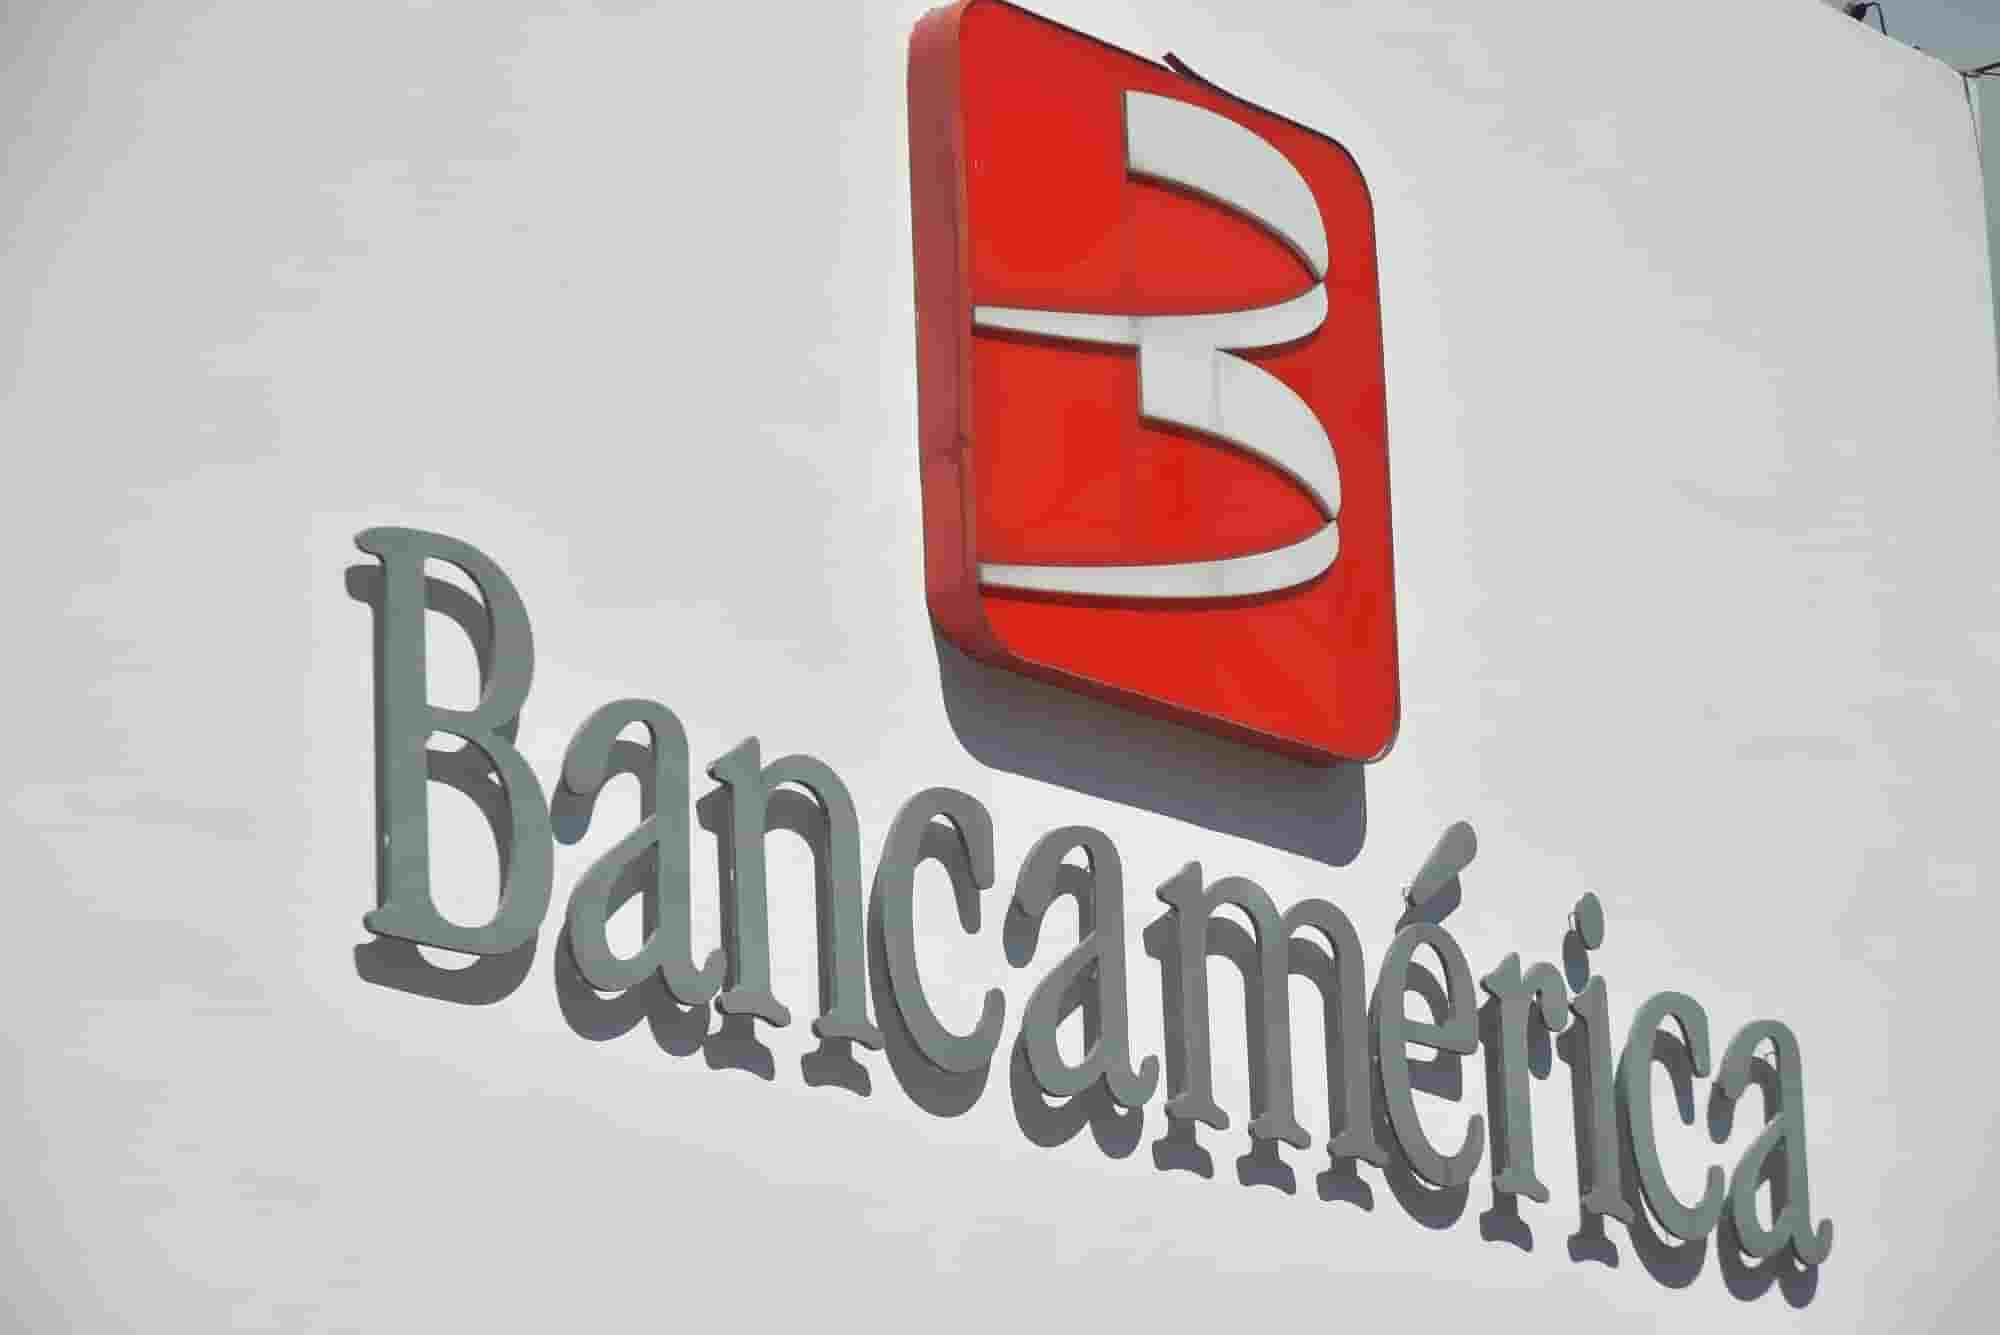 Bancamerica tiene los días contados